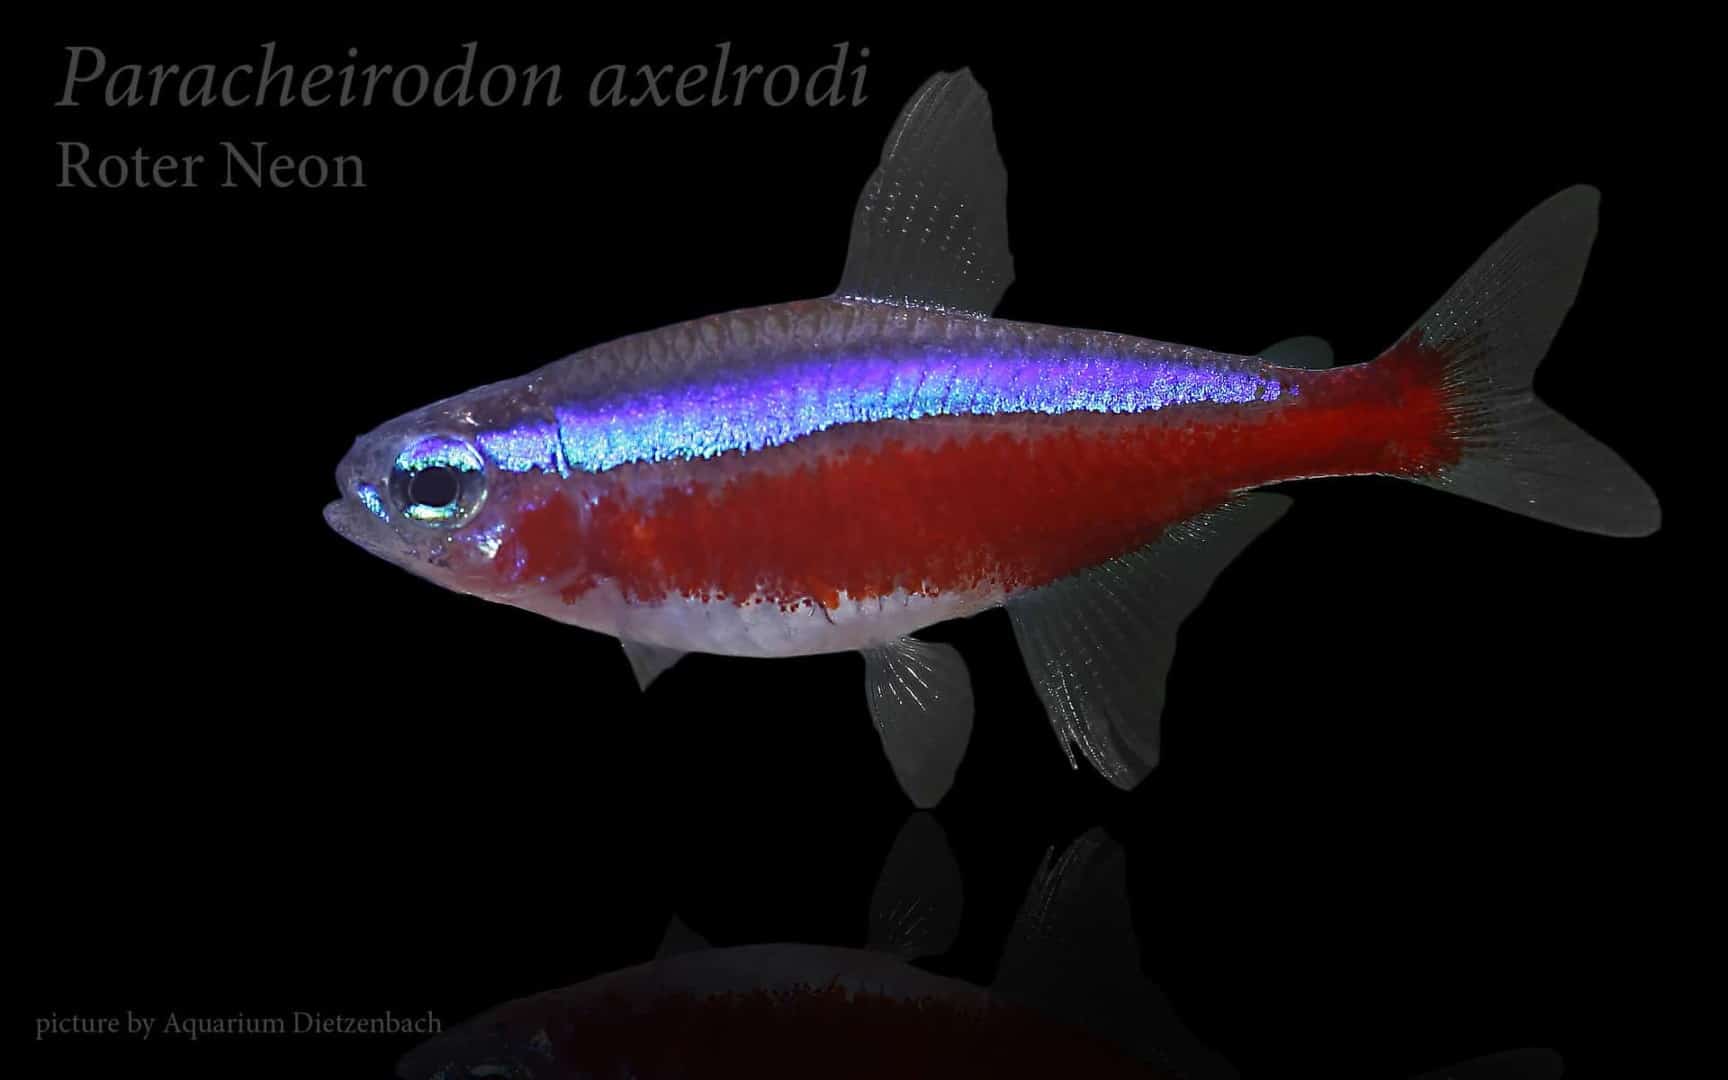 Paracheirodon axelrodi - Roter Neon 10